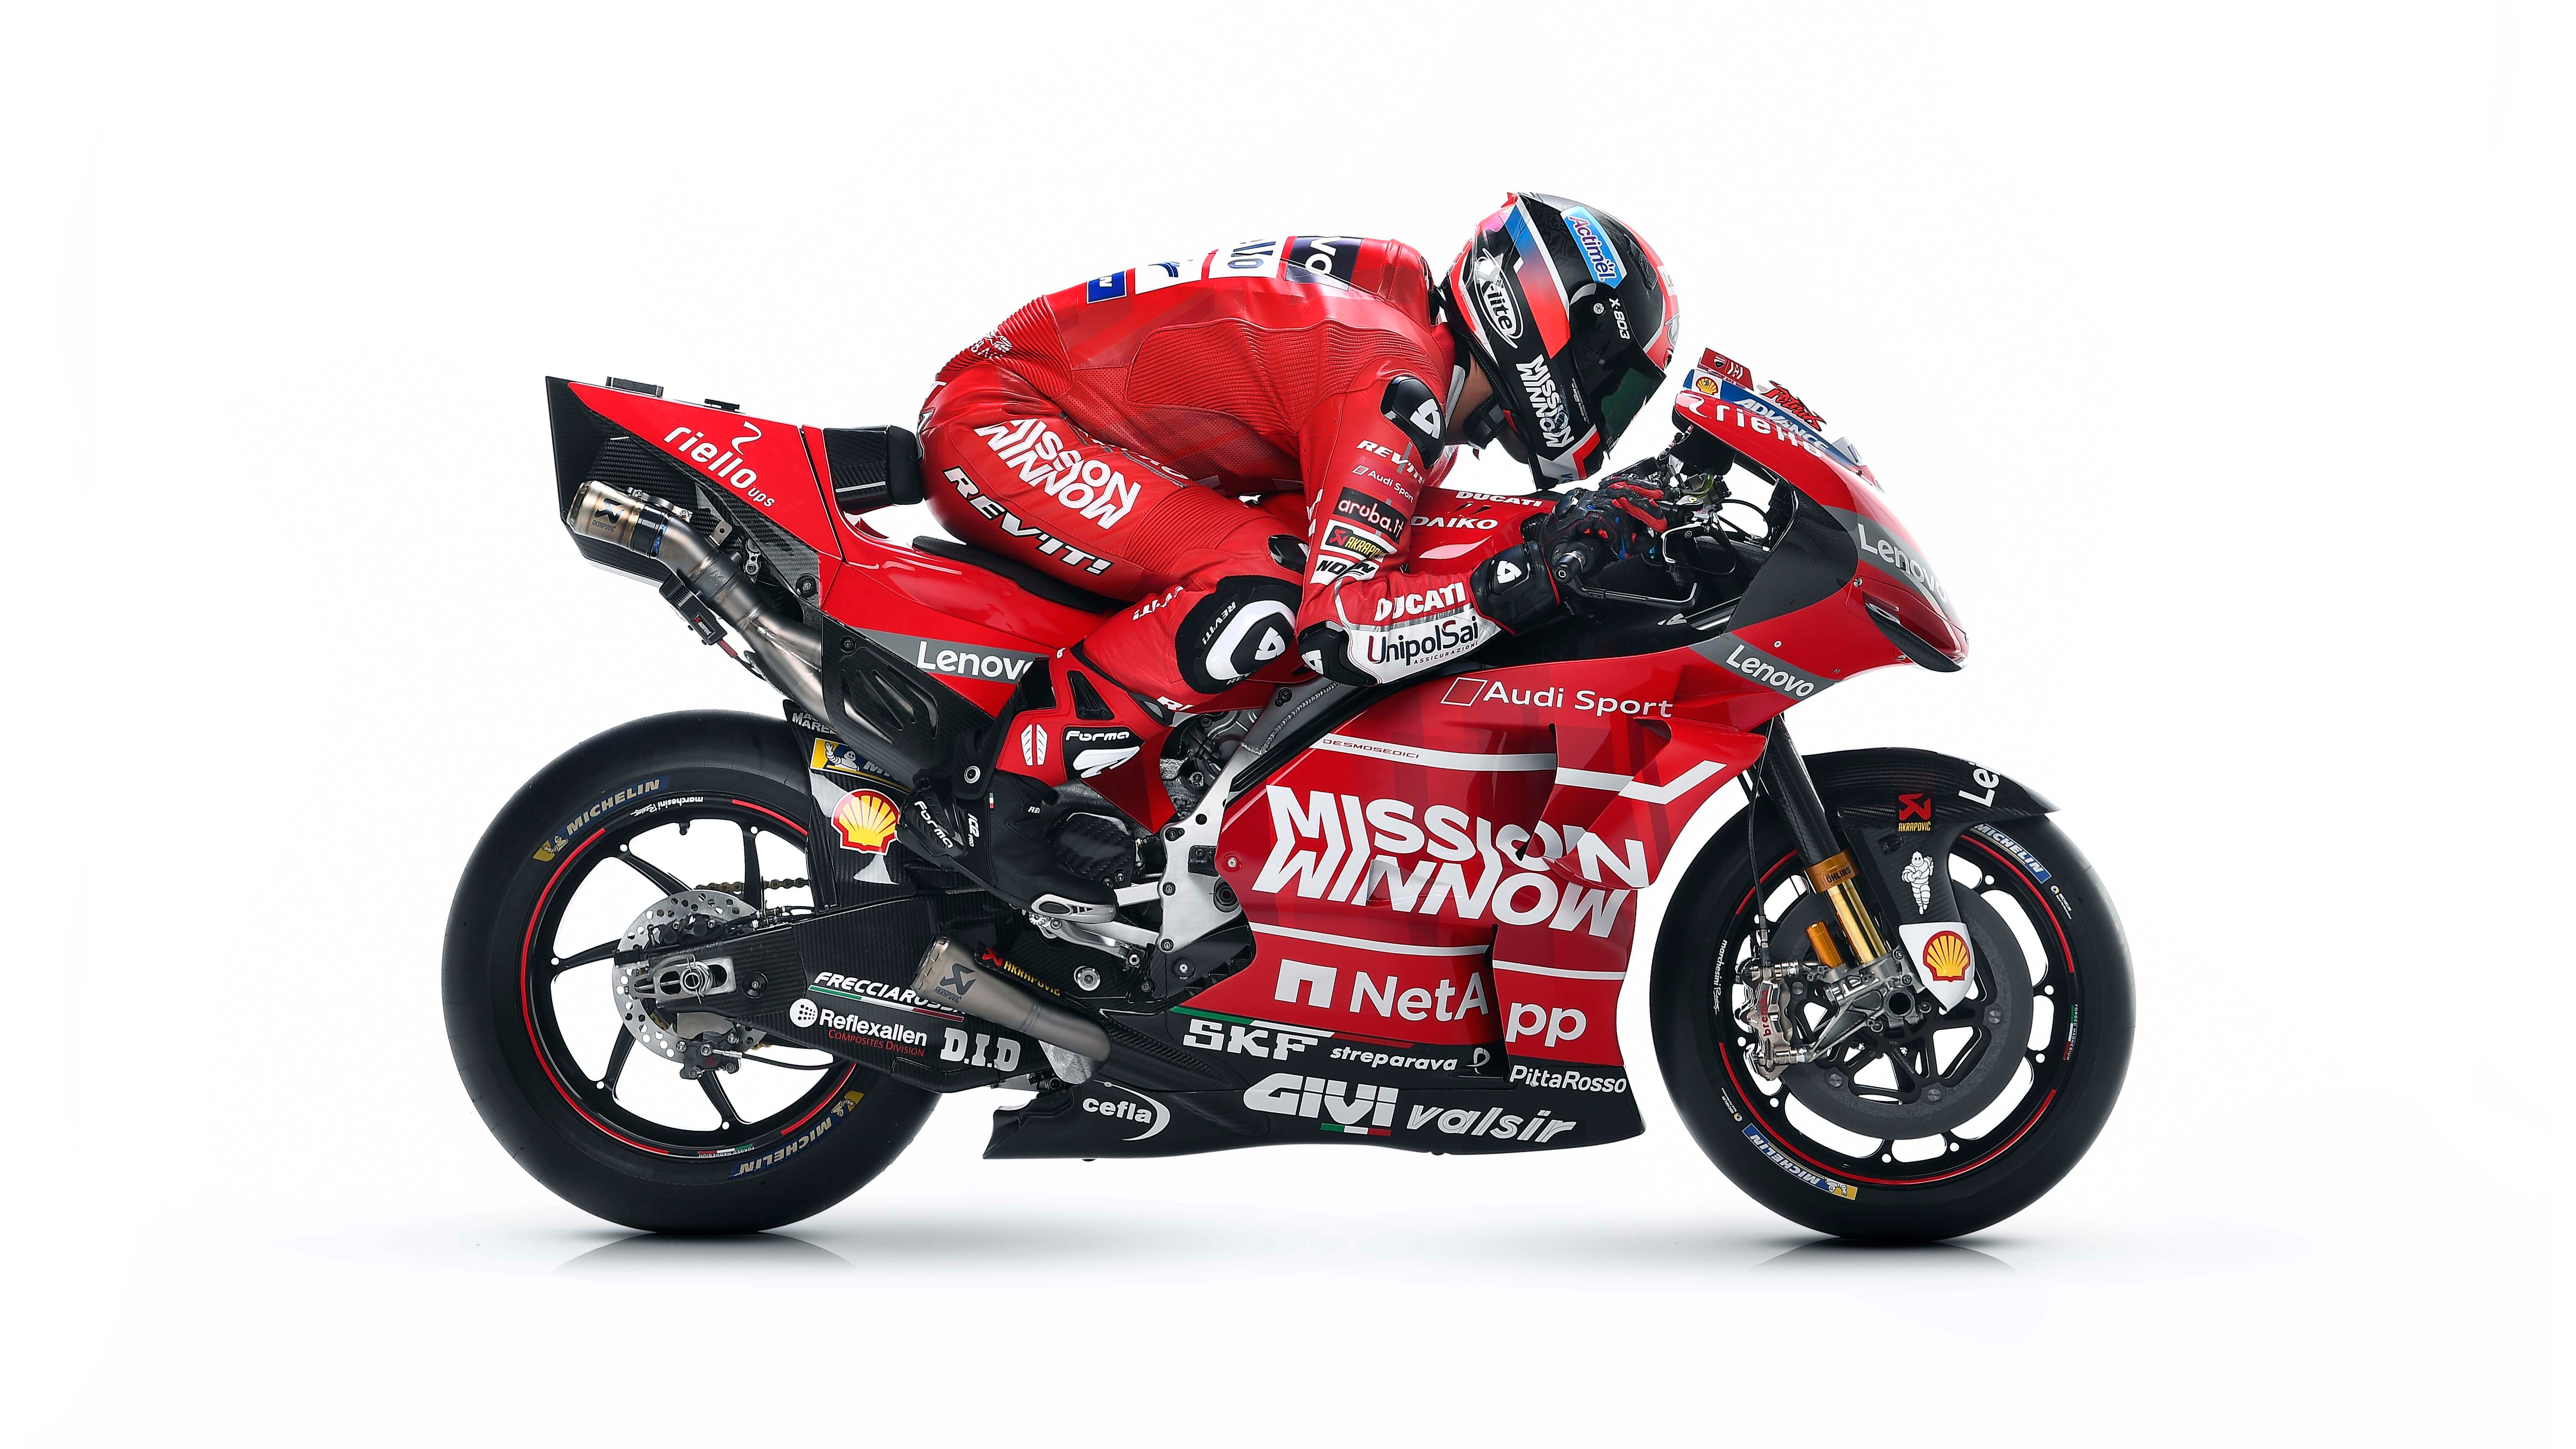 Ducati Desmosedici GP19 MotoGP Race Bike Wallpapers